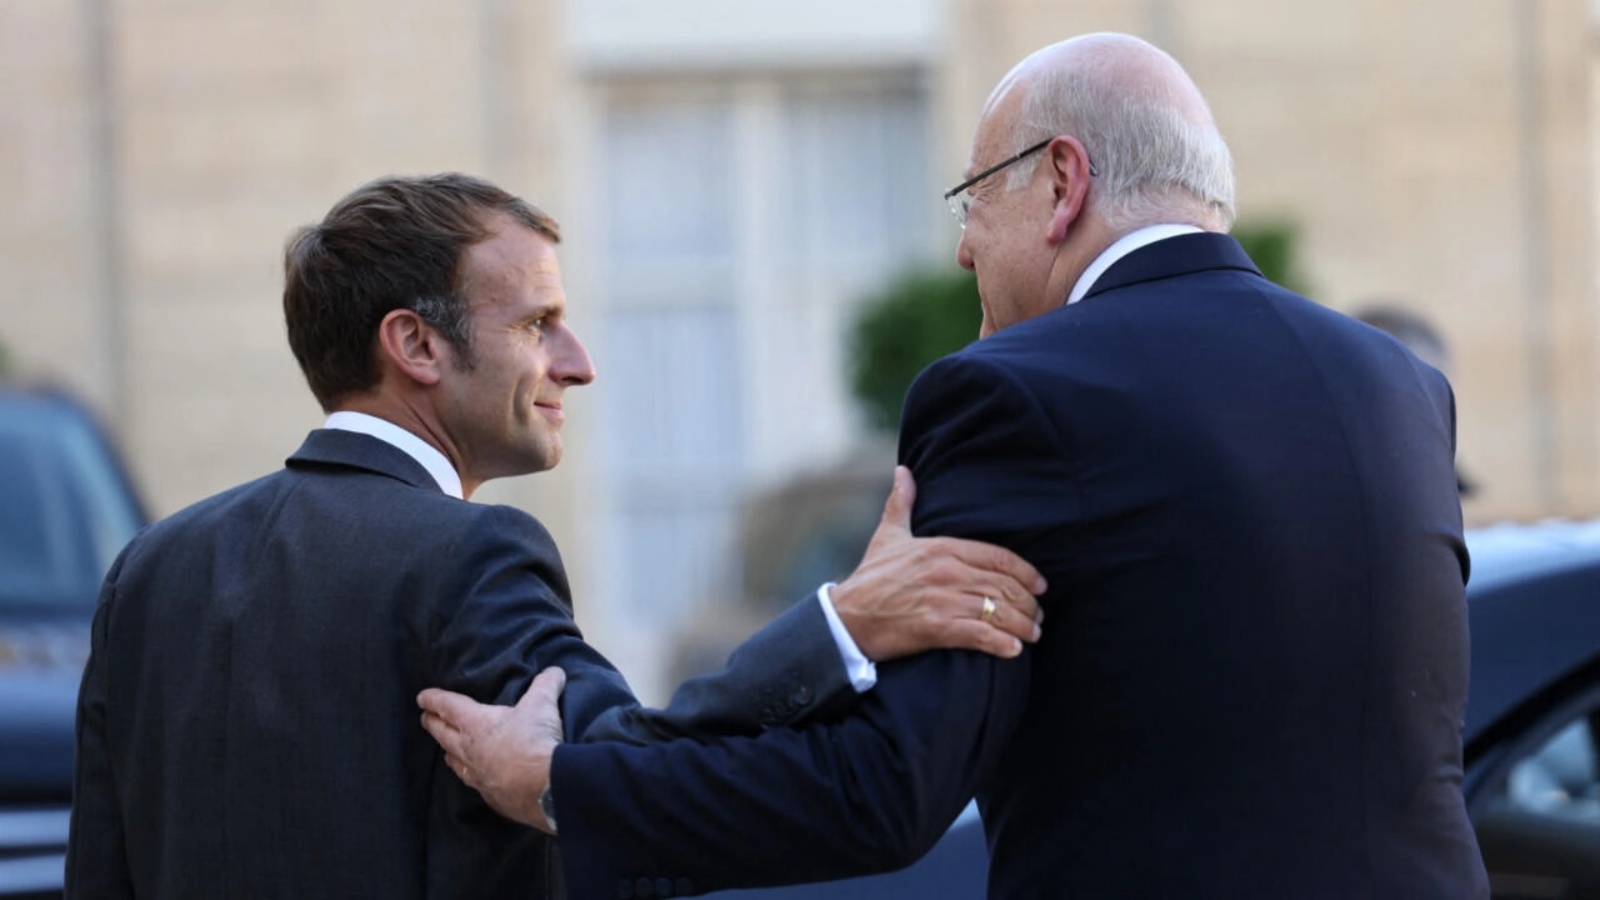 الرئيس الفرنسي إيمانويل ماكرون (إلى اليسار) ورئيس الوزراء اللبناني نجيب ميقاتي يسيران بعد غداء عمل في قصر الإليزيه في باريس، 24 سبتمبر 2021